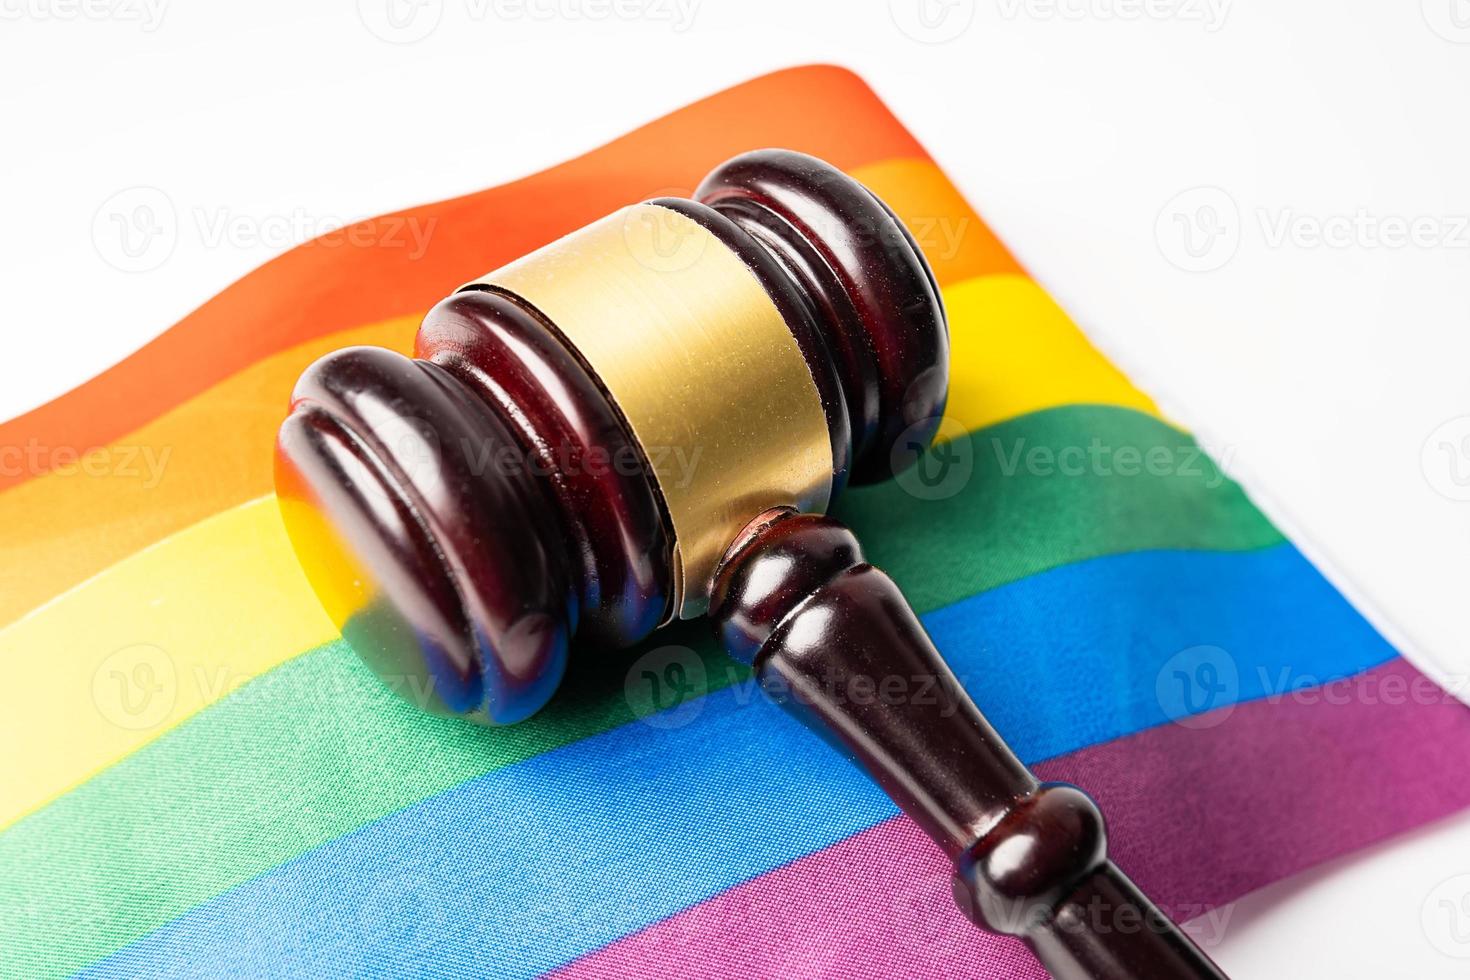 martelletto per avvocato giudice sulla bandiera arcobaleno, simbolo del mese dell'orgoglio lgbt celebra annualmente a giugno sociale di gay, lesbiche, bisessuali, transgender, diritti umani. foto